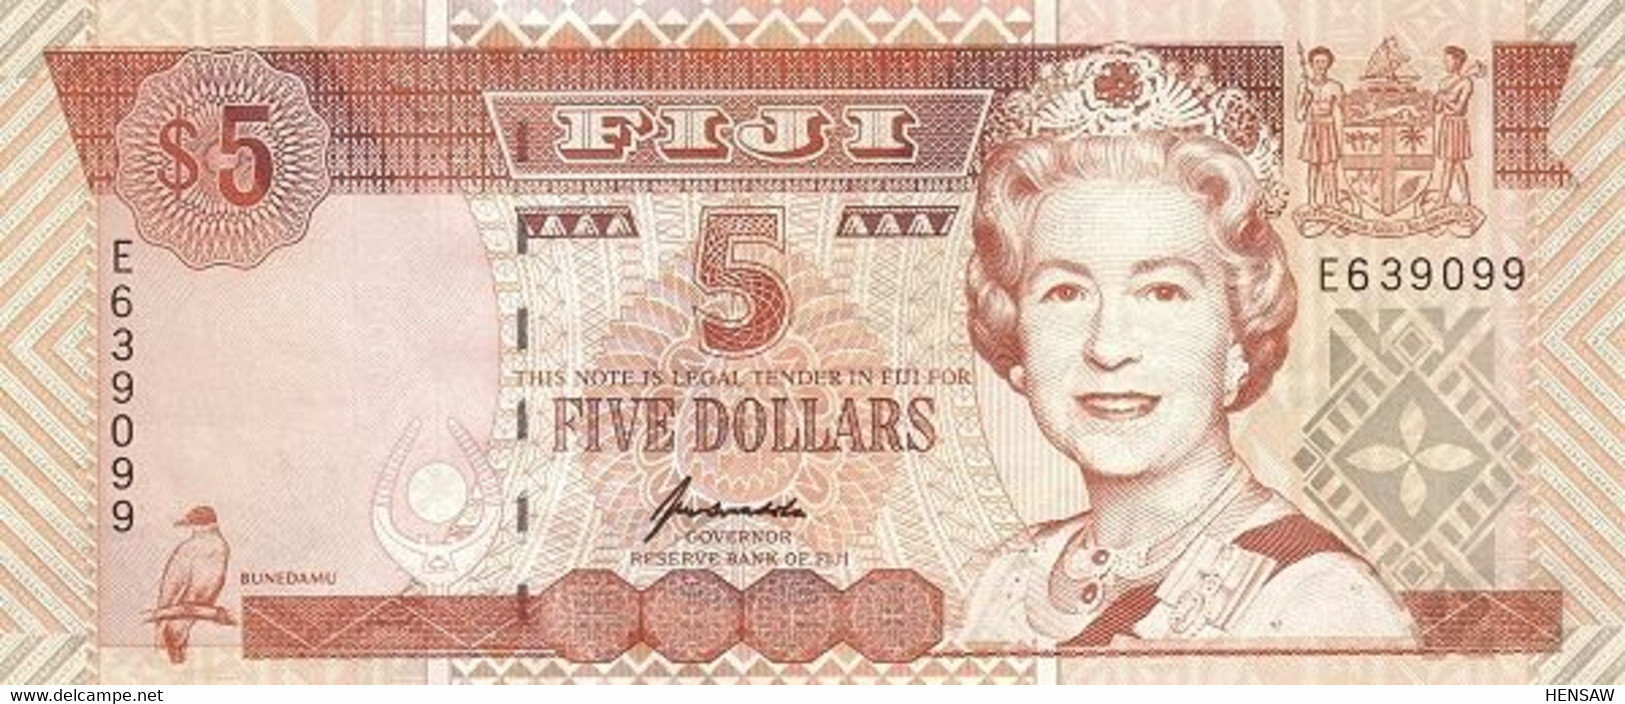 FIJI 5 DOLLARS 1995 P 97 UNC SC NUEVO - Fiji